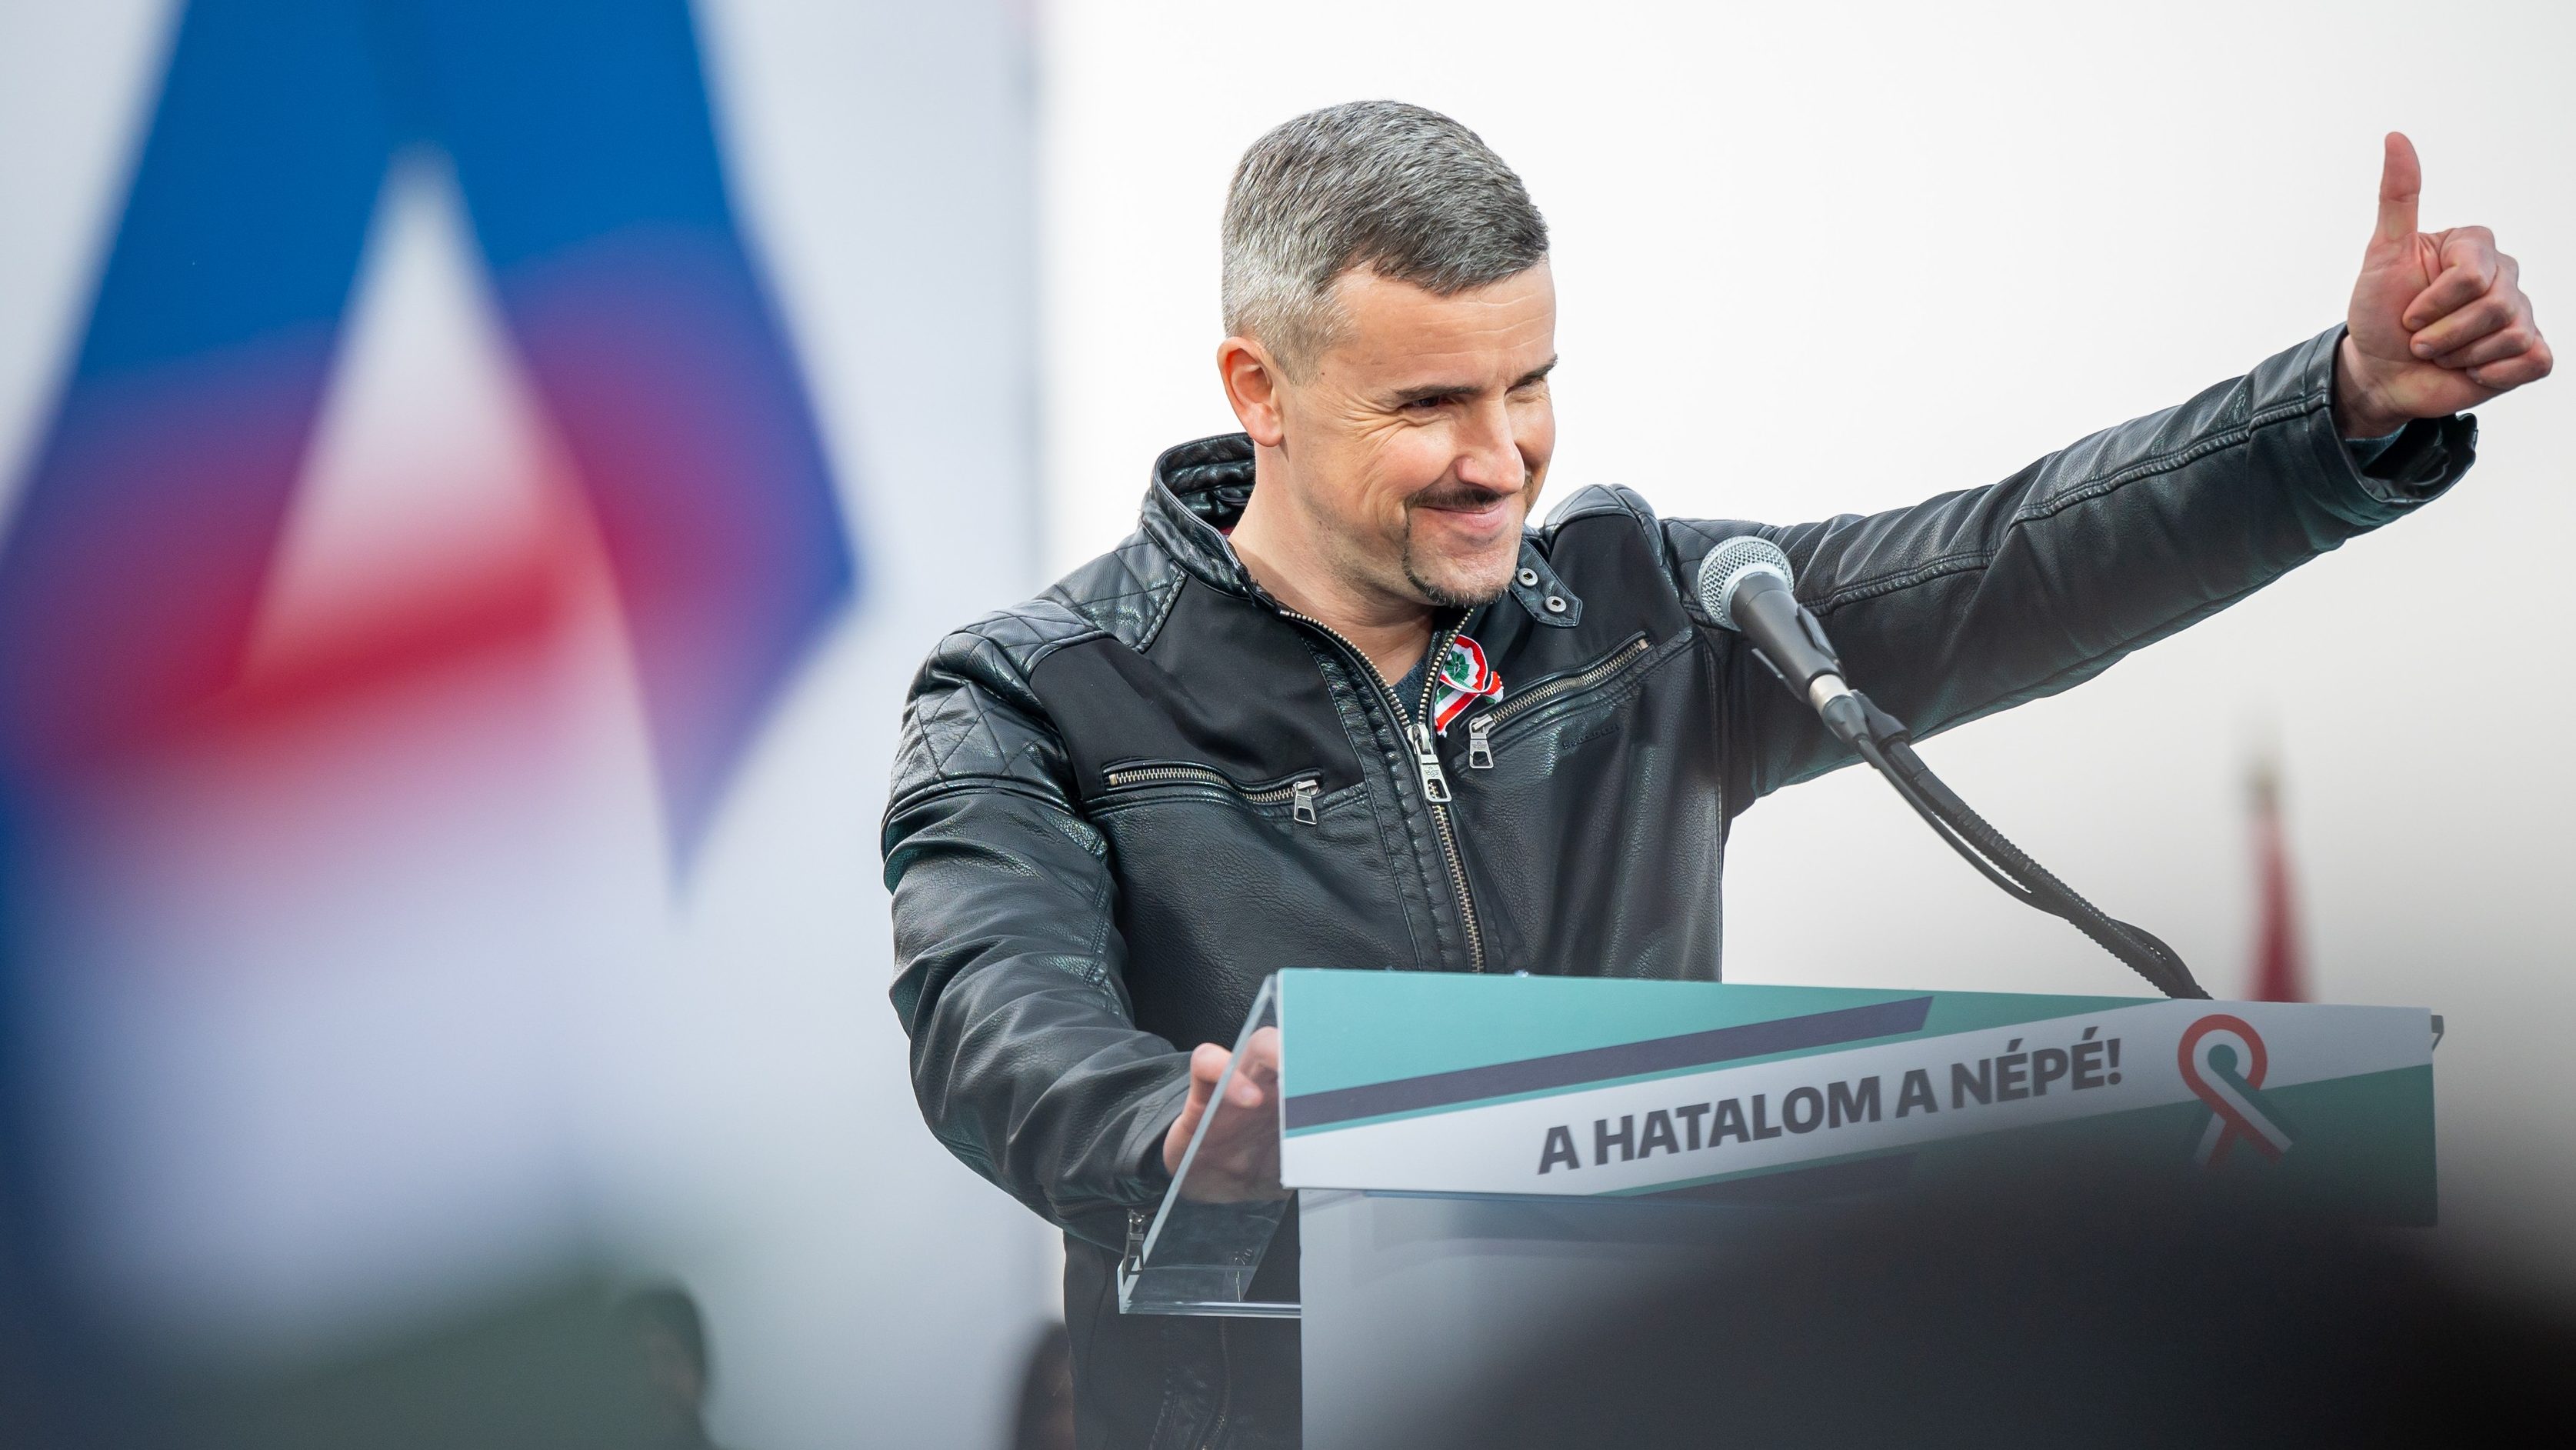 Megelégelte a Jobbik, hogy Jakab Péter saját arculattal kampányol